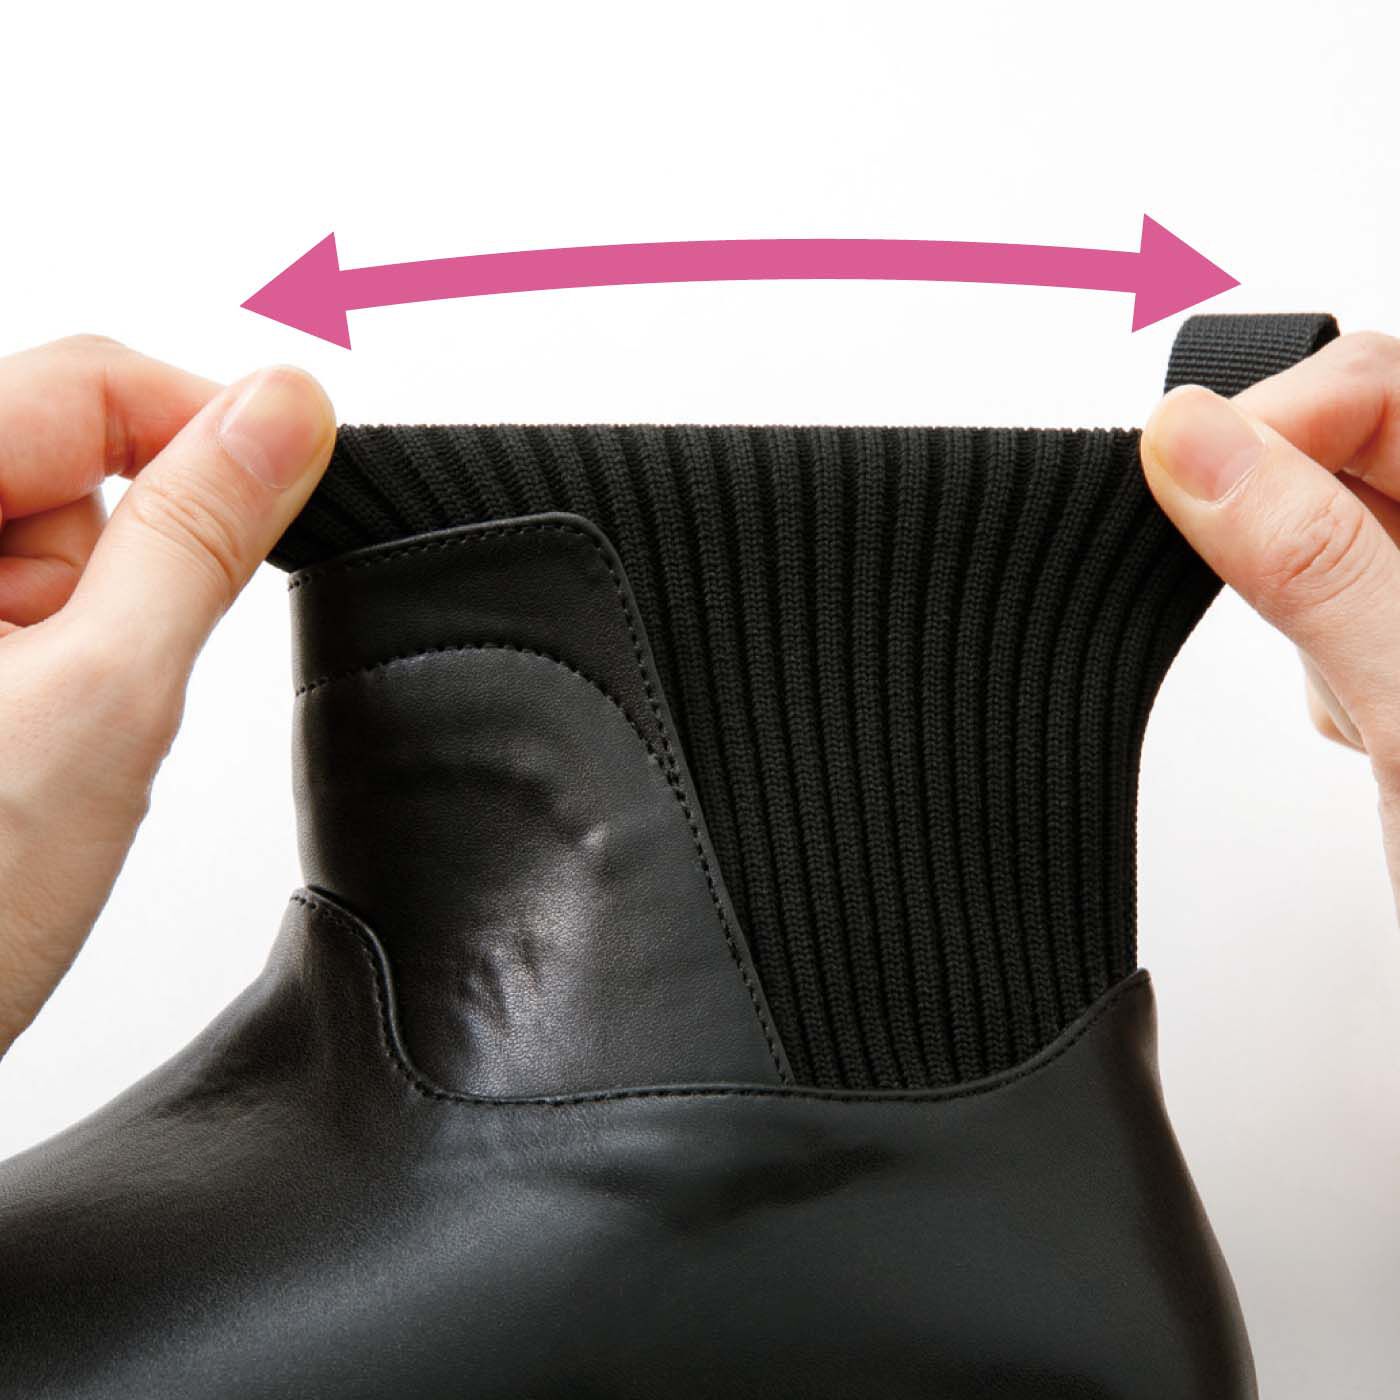 Real Stock|UP.de　きちんと見えるのにするんと履ける らくちんニット遣いの防水仕様ブーツ|筒部分はストレッチニットなので、するっとらくに足入れできます。